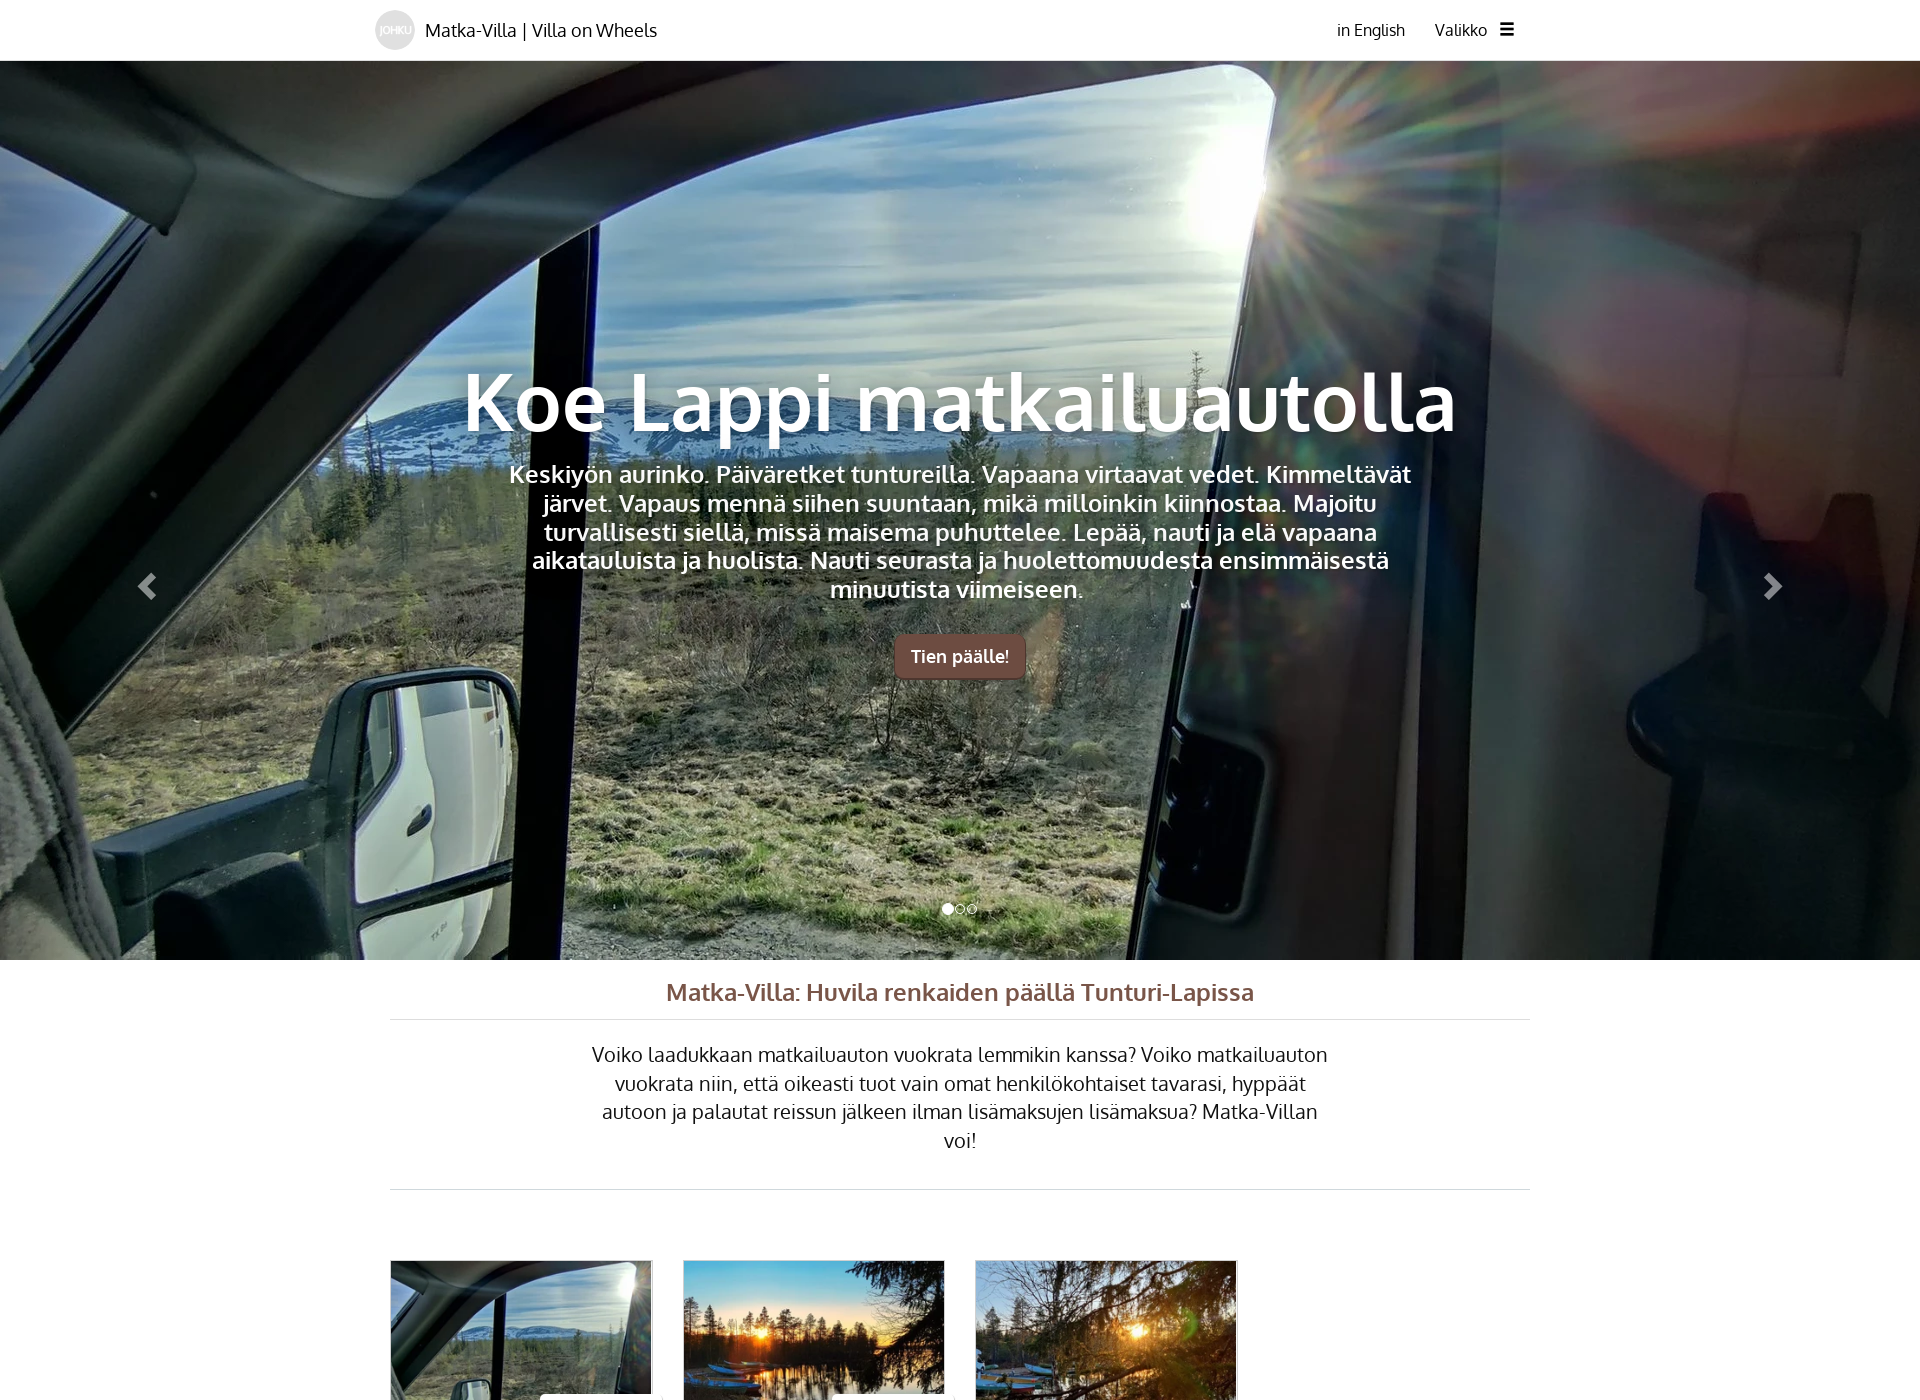 Screenshot for matkavilla.fi